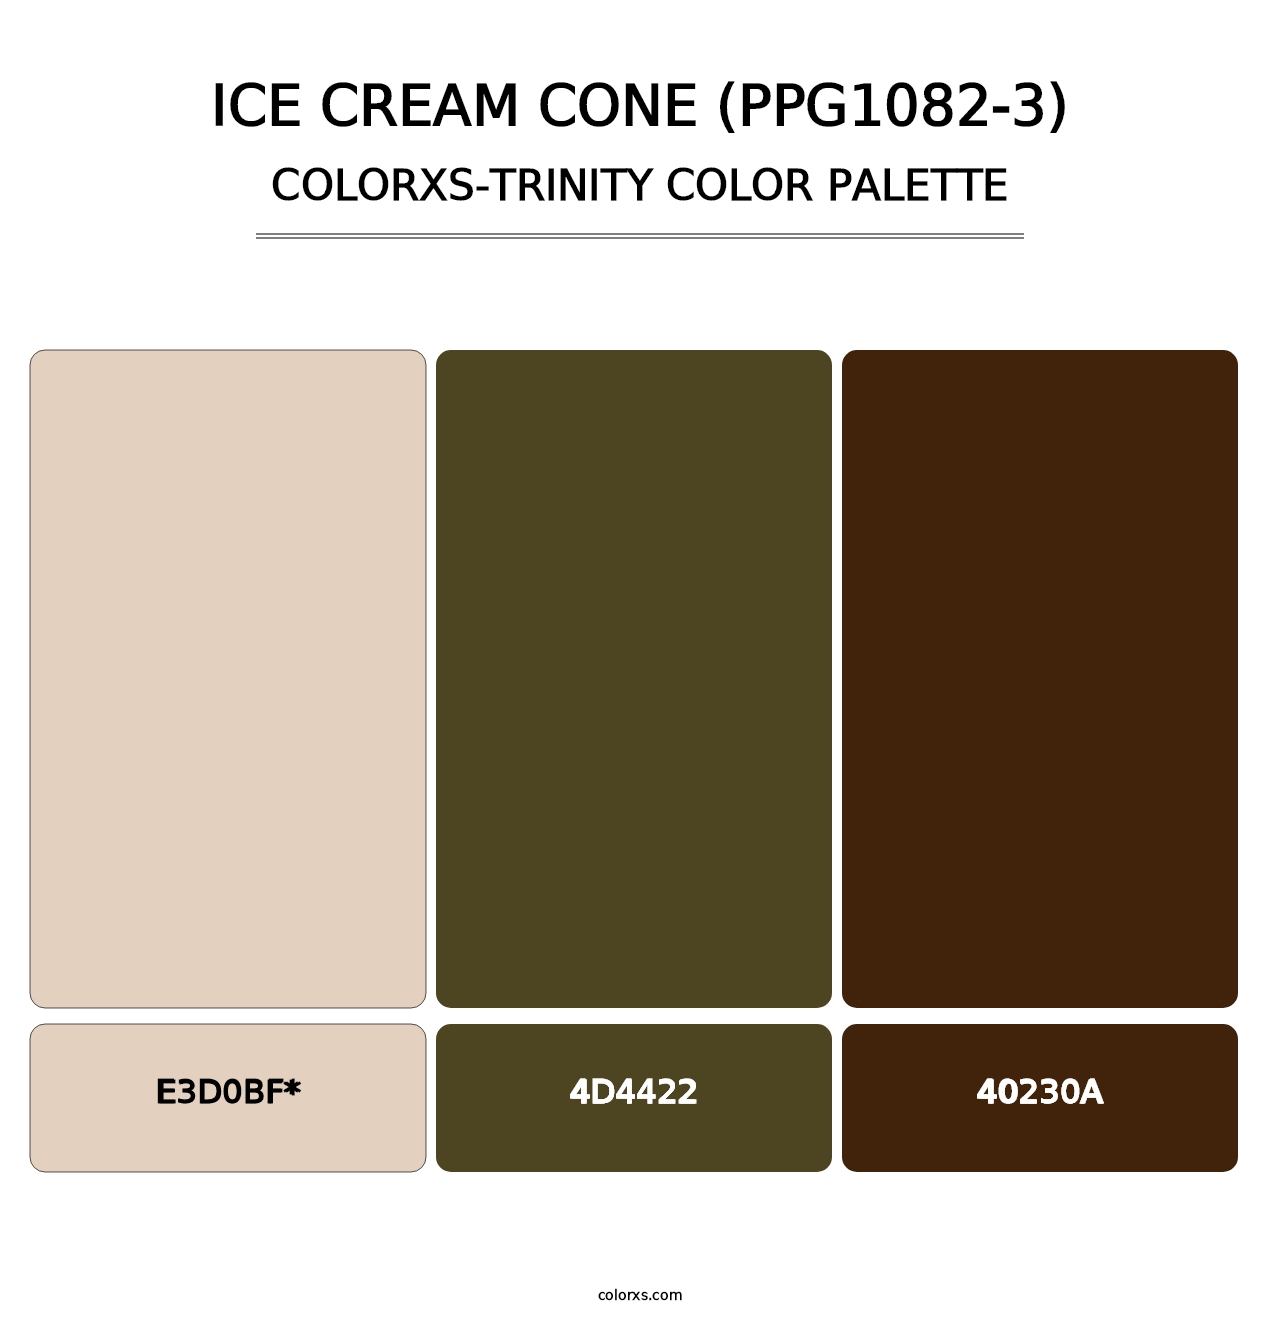 Ice Cream Cone (PPG1082-3) - Colorxs Trinity Palette